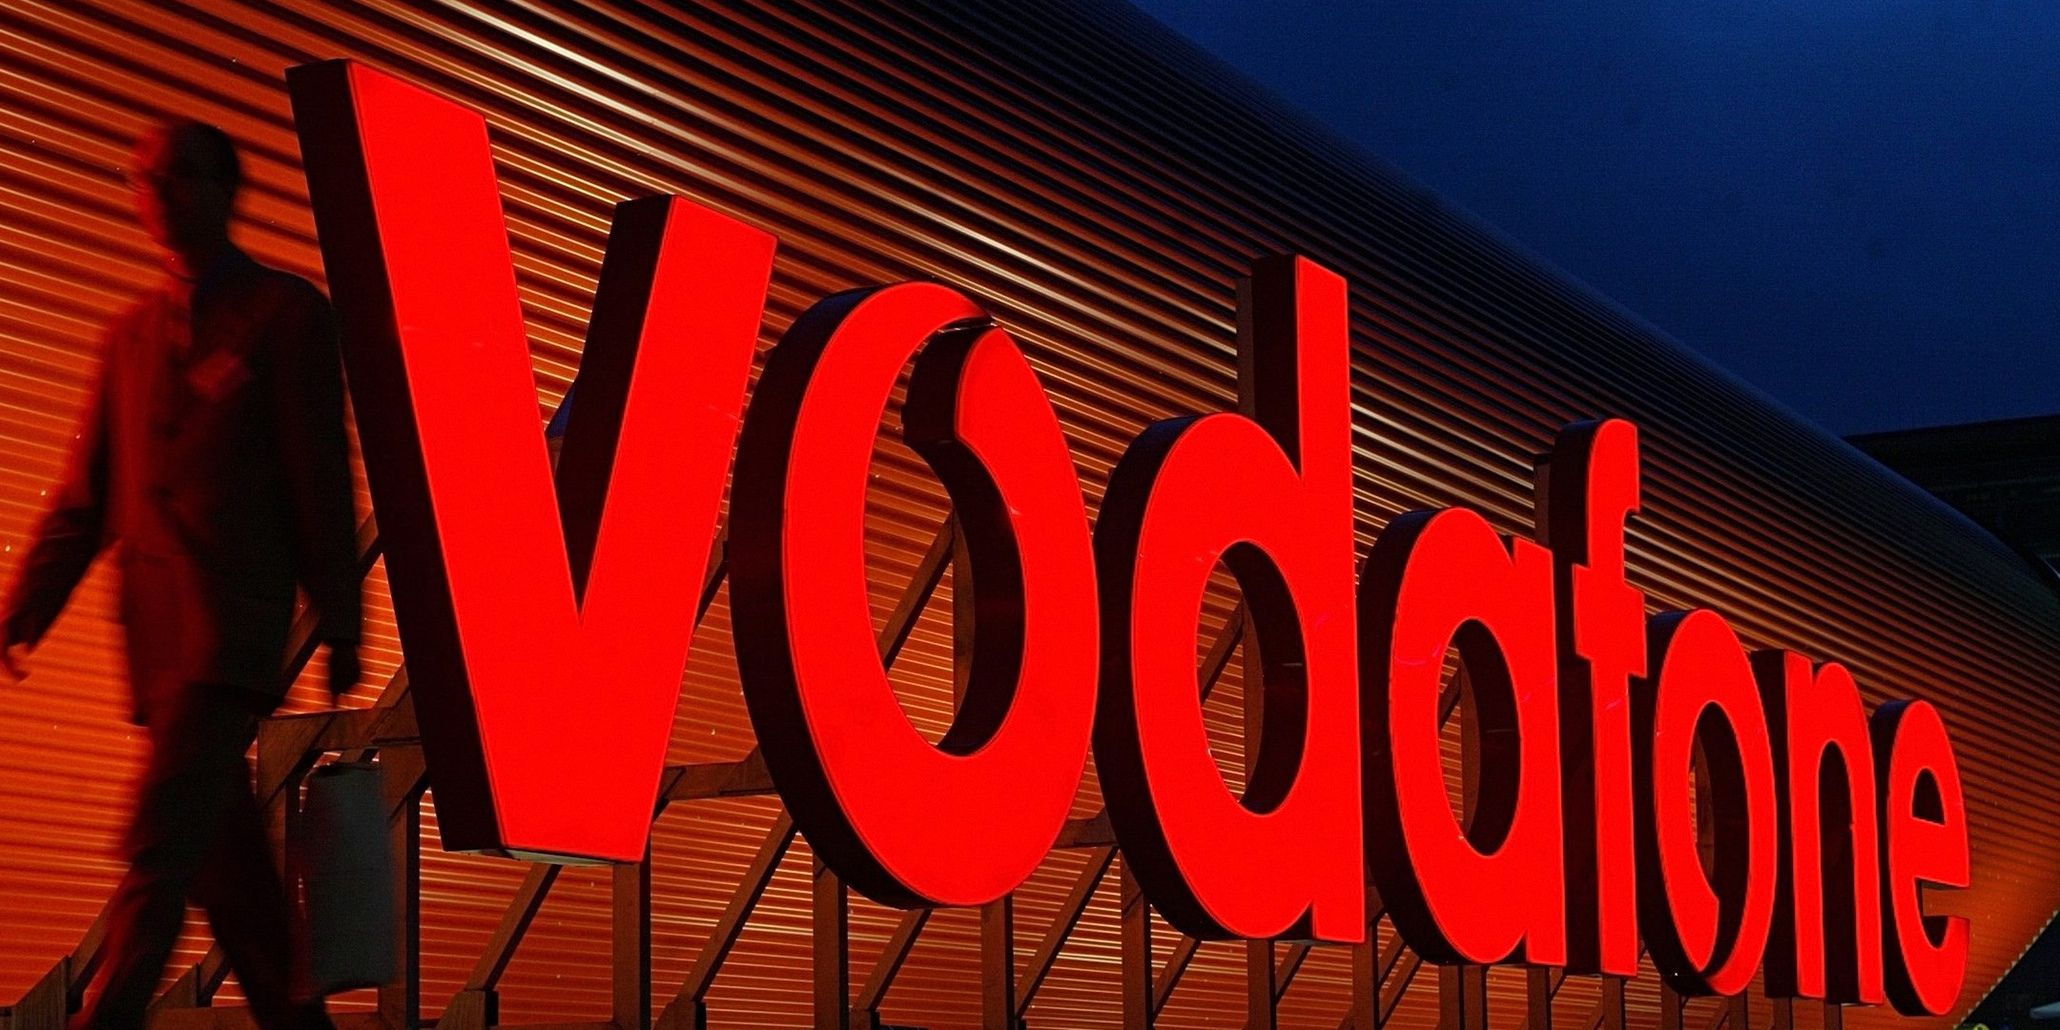 Vodafone, verimli enerji kullanımıyla çevreye katkısını sürdürüyor